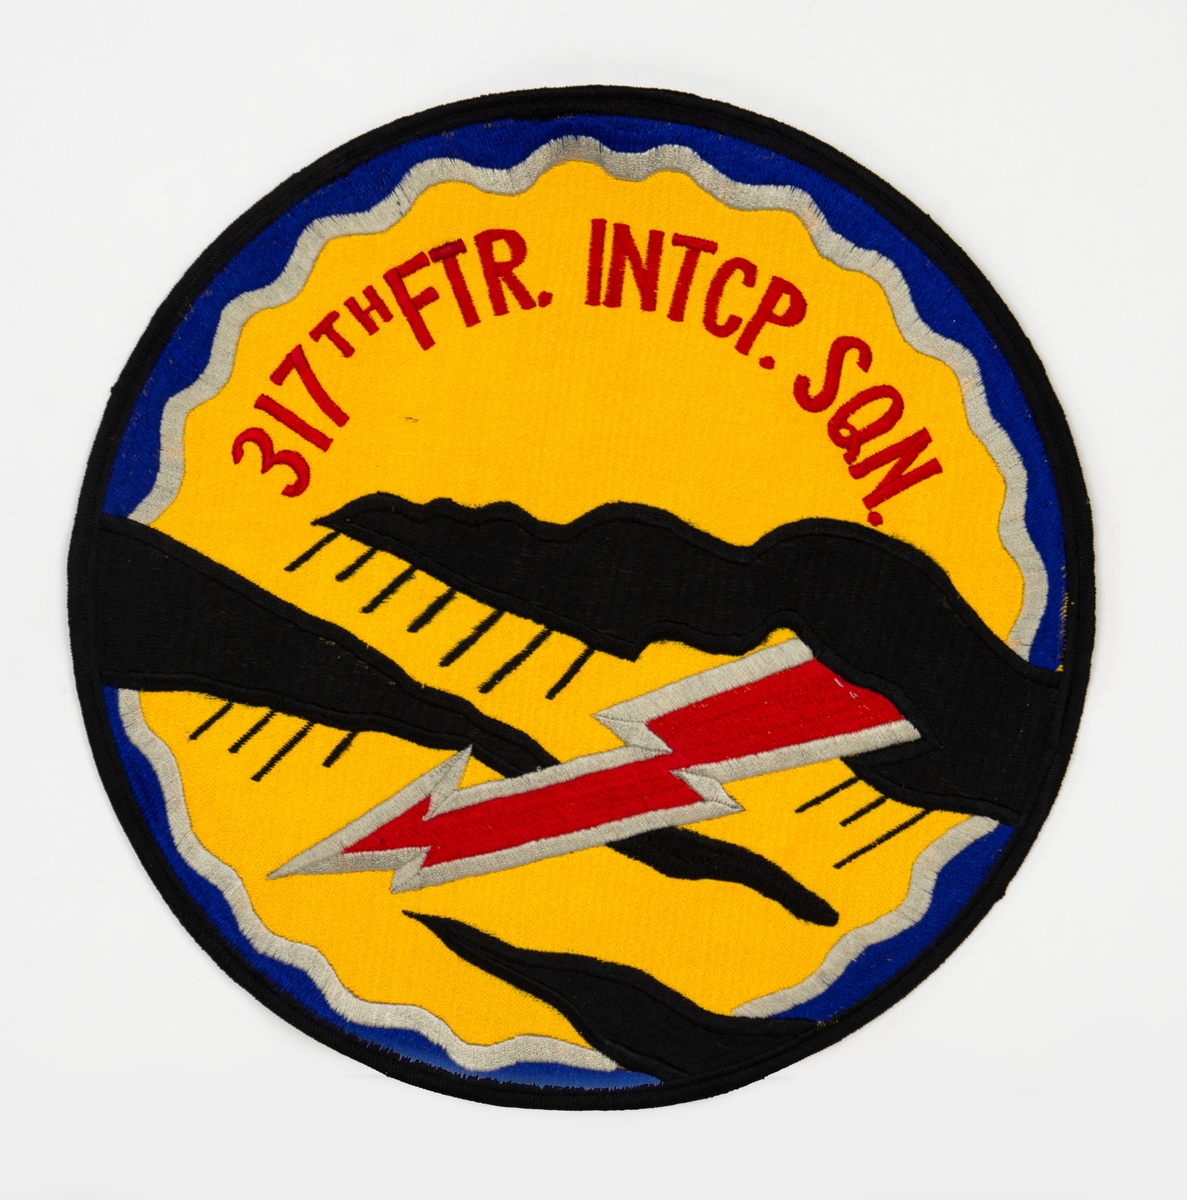 Broderat emblem på gul botten. Motiv med två svarta regnmoln och en röd blixt. Text: "317TH FTR. Intcp. Sqn" (317th Fighter Interceptor Squadron).